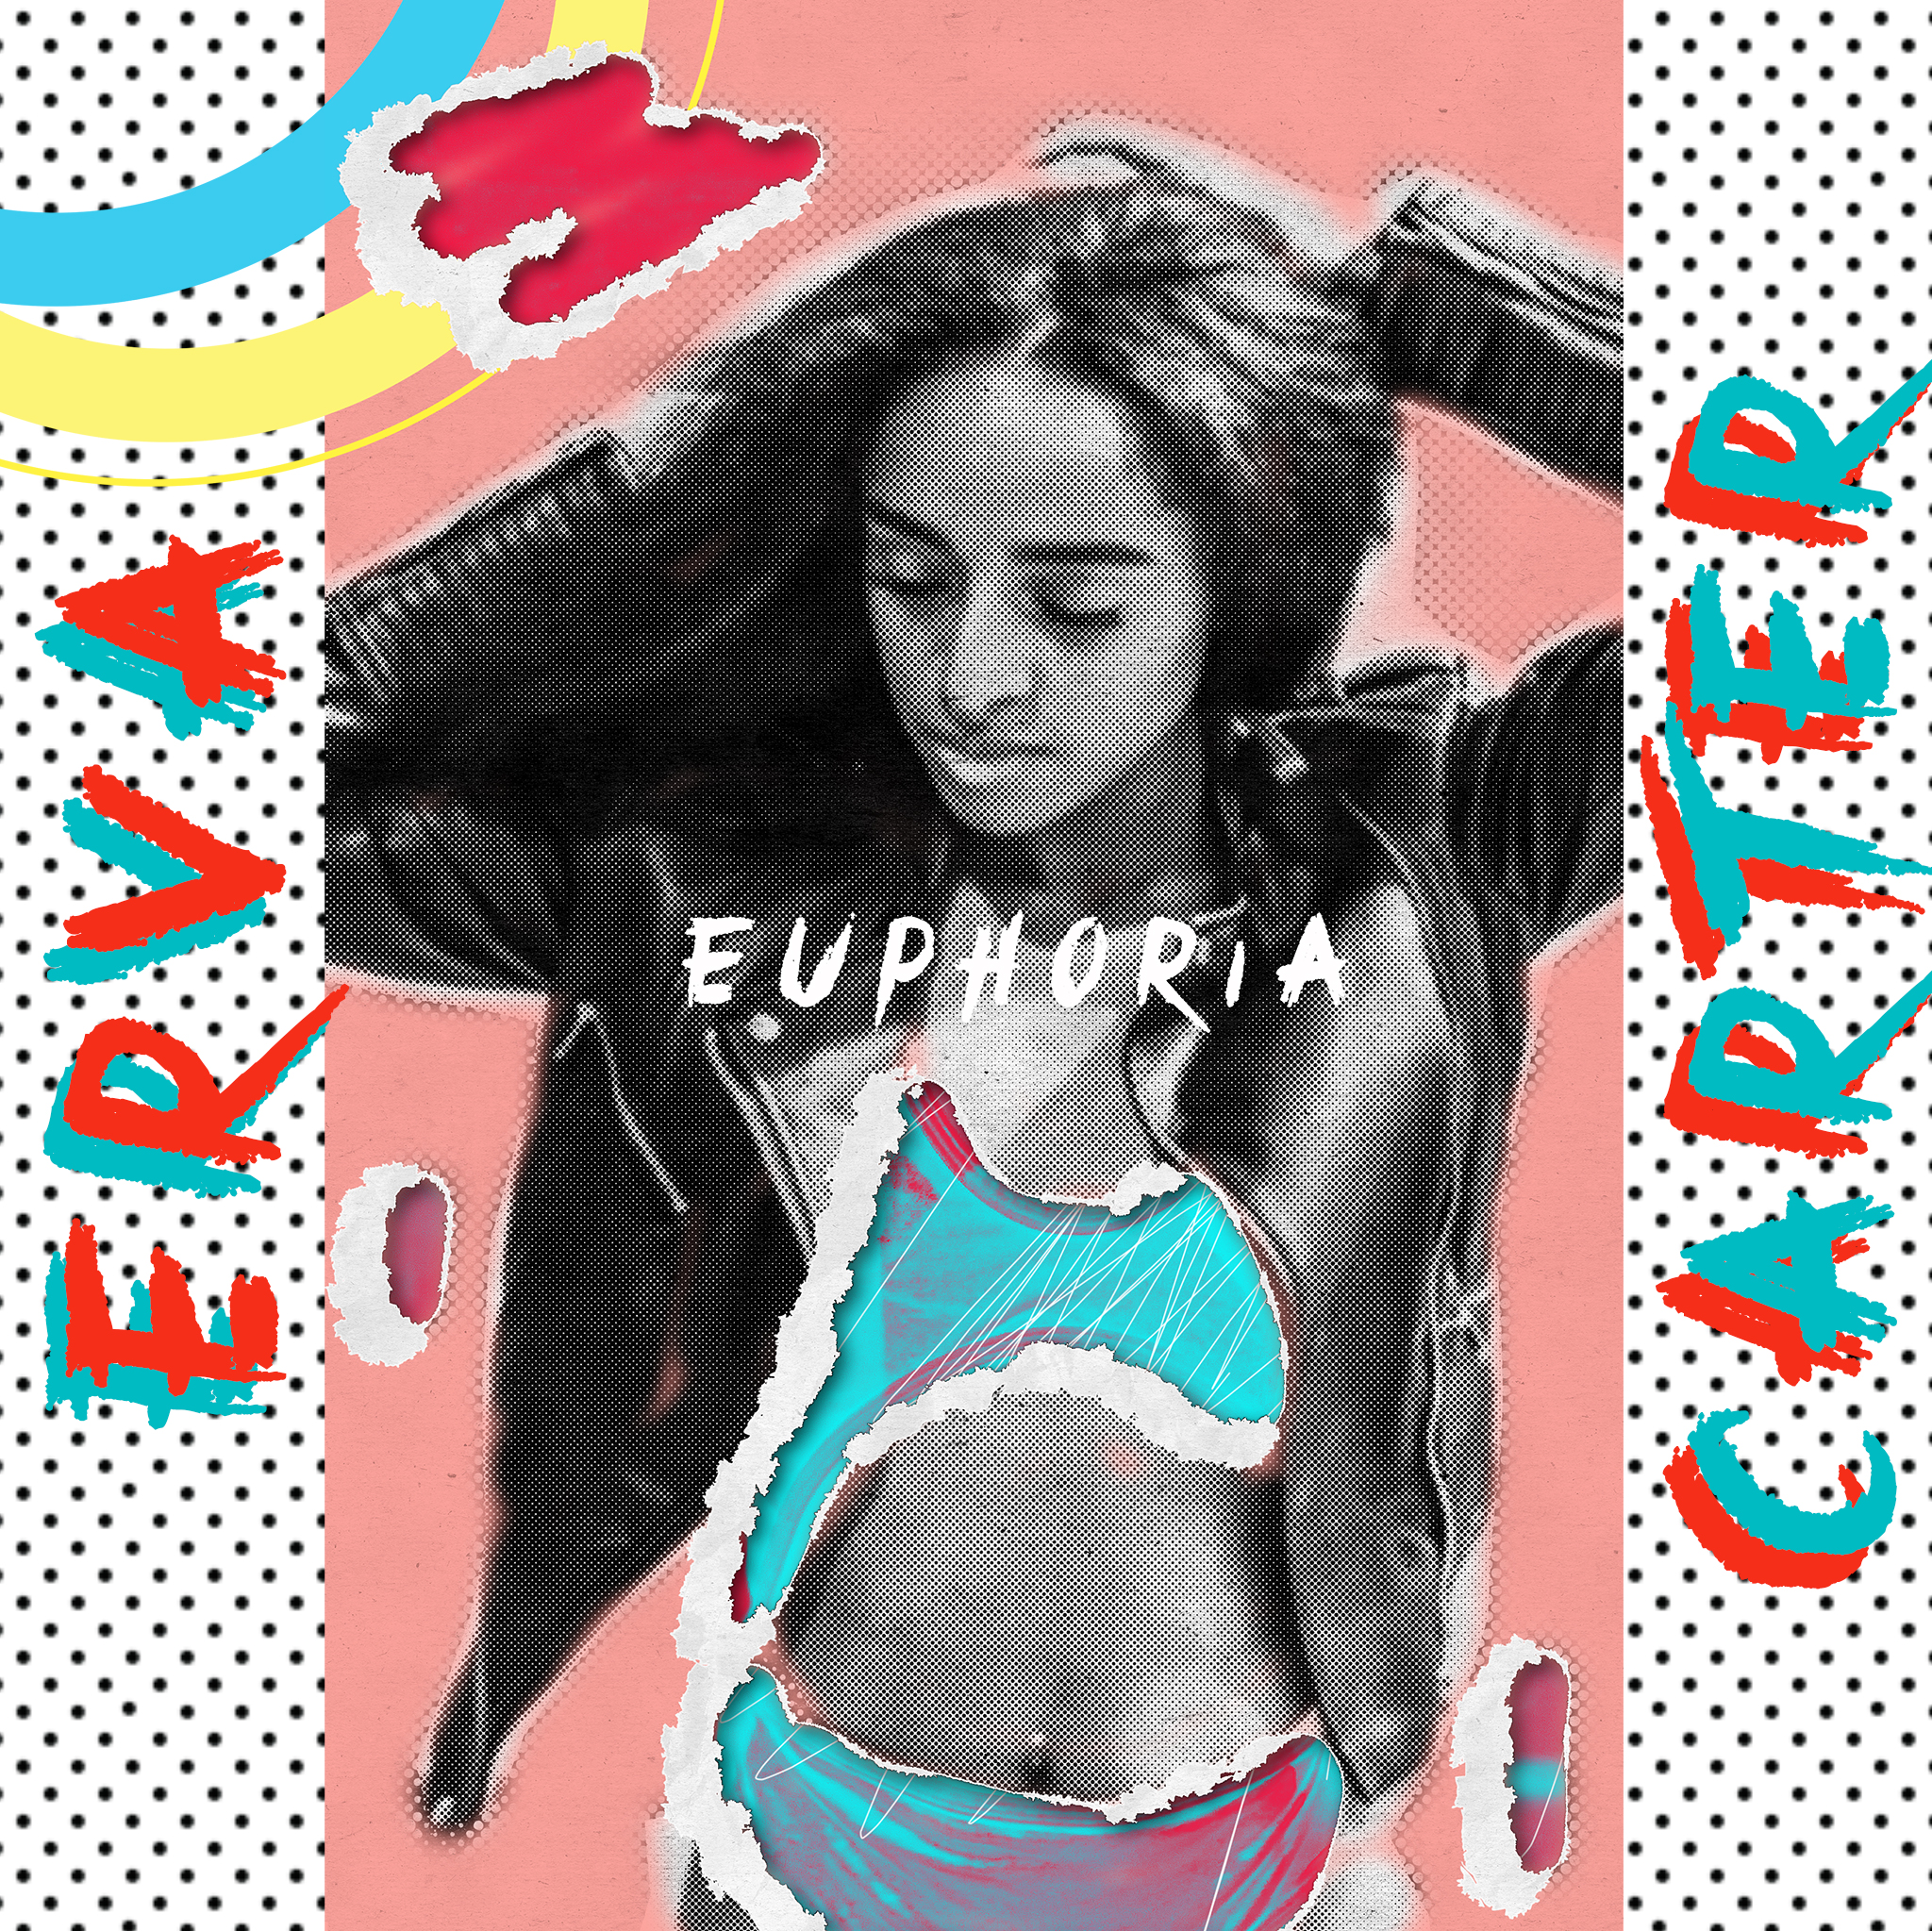 Erva Carter – “Euphoria” – produced by 8mos